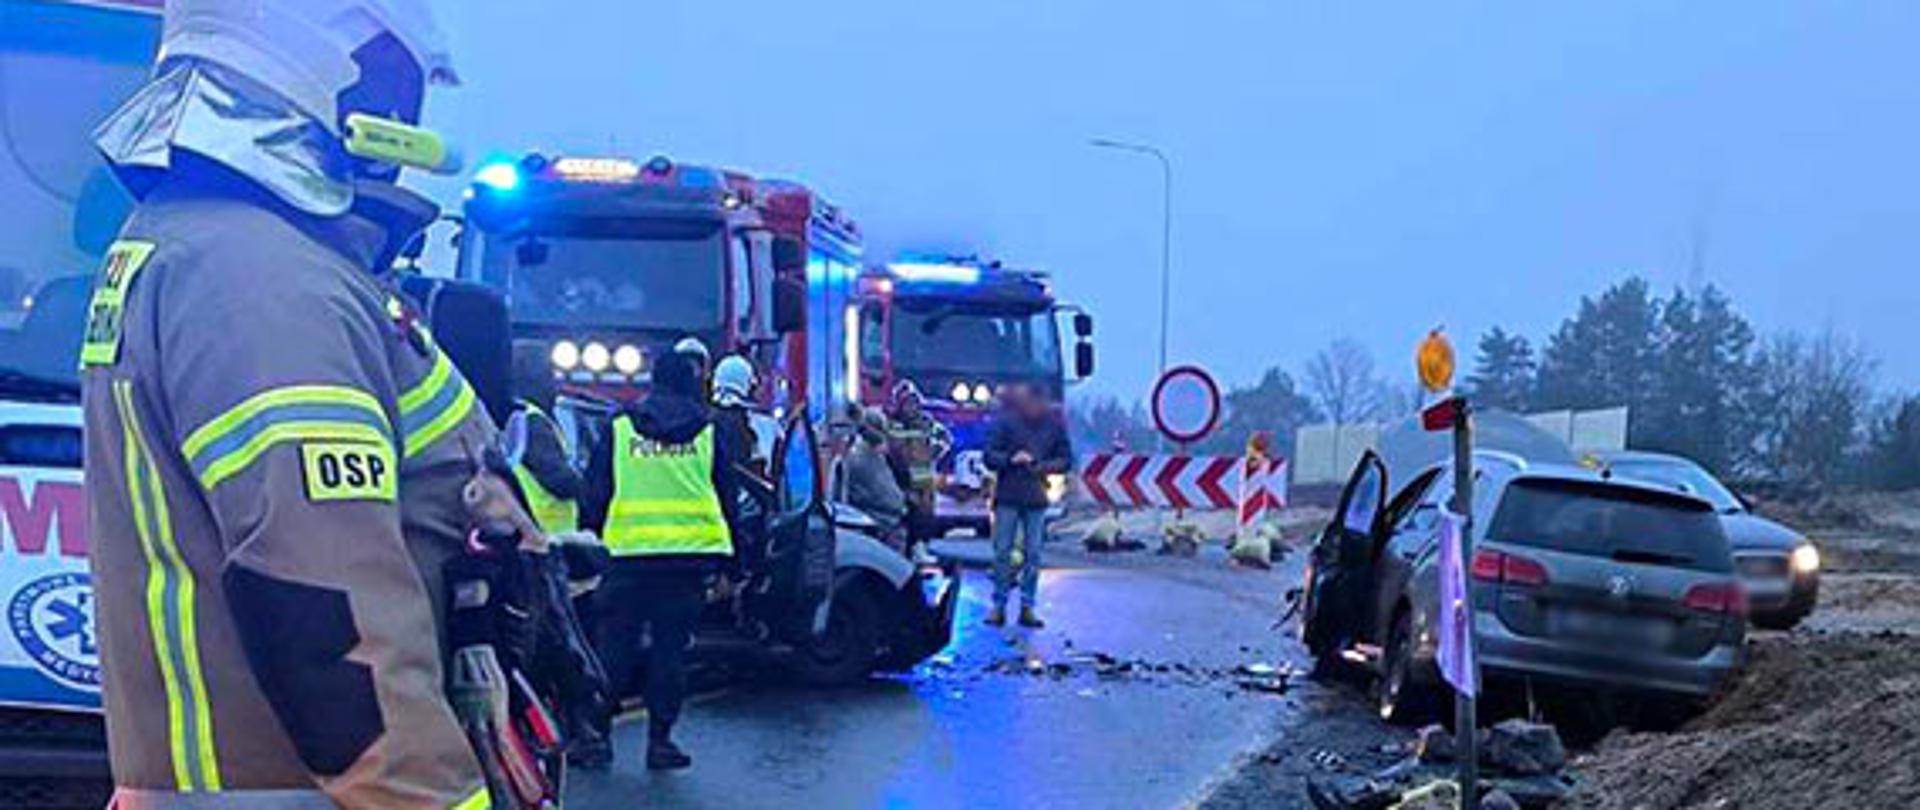 PSP w Kamieniu Pomorskim wpłynęła informacja o wypadku drogowym na remontowanym odcinku DK3 w miejscowości Dargobadz gm. Wolin